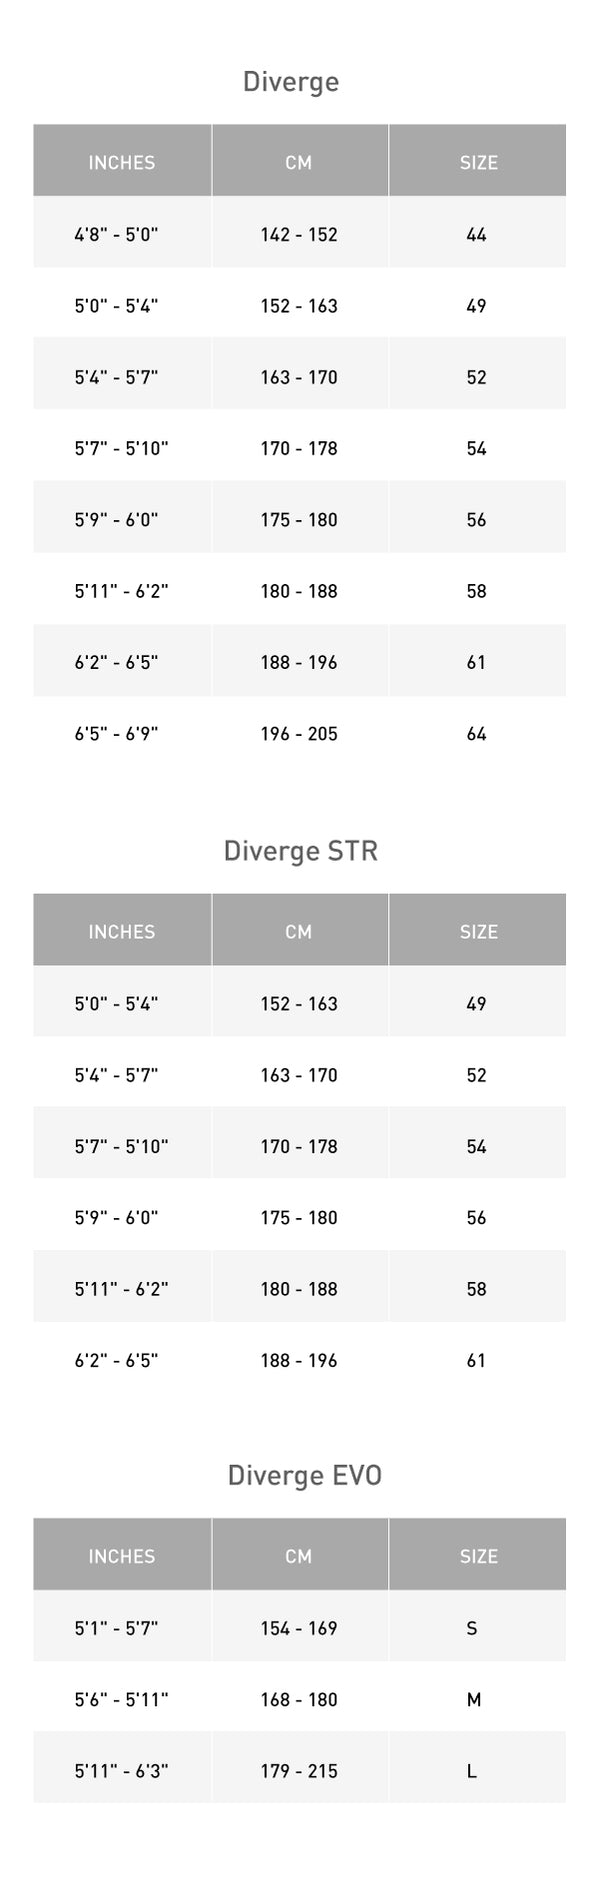 Specialized Diverge S-Works STR Frameset